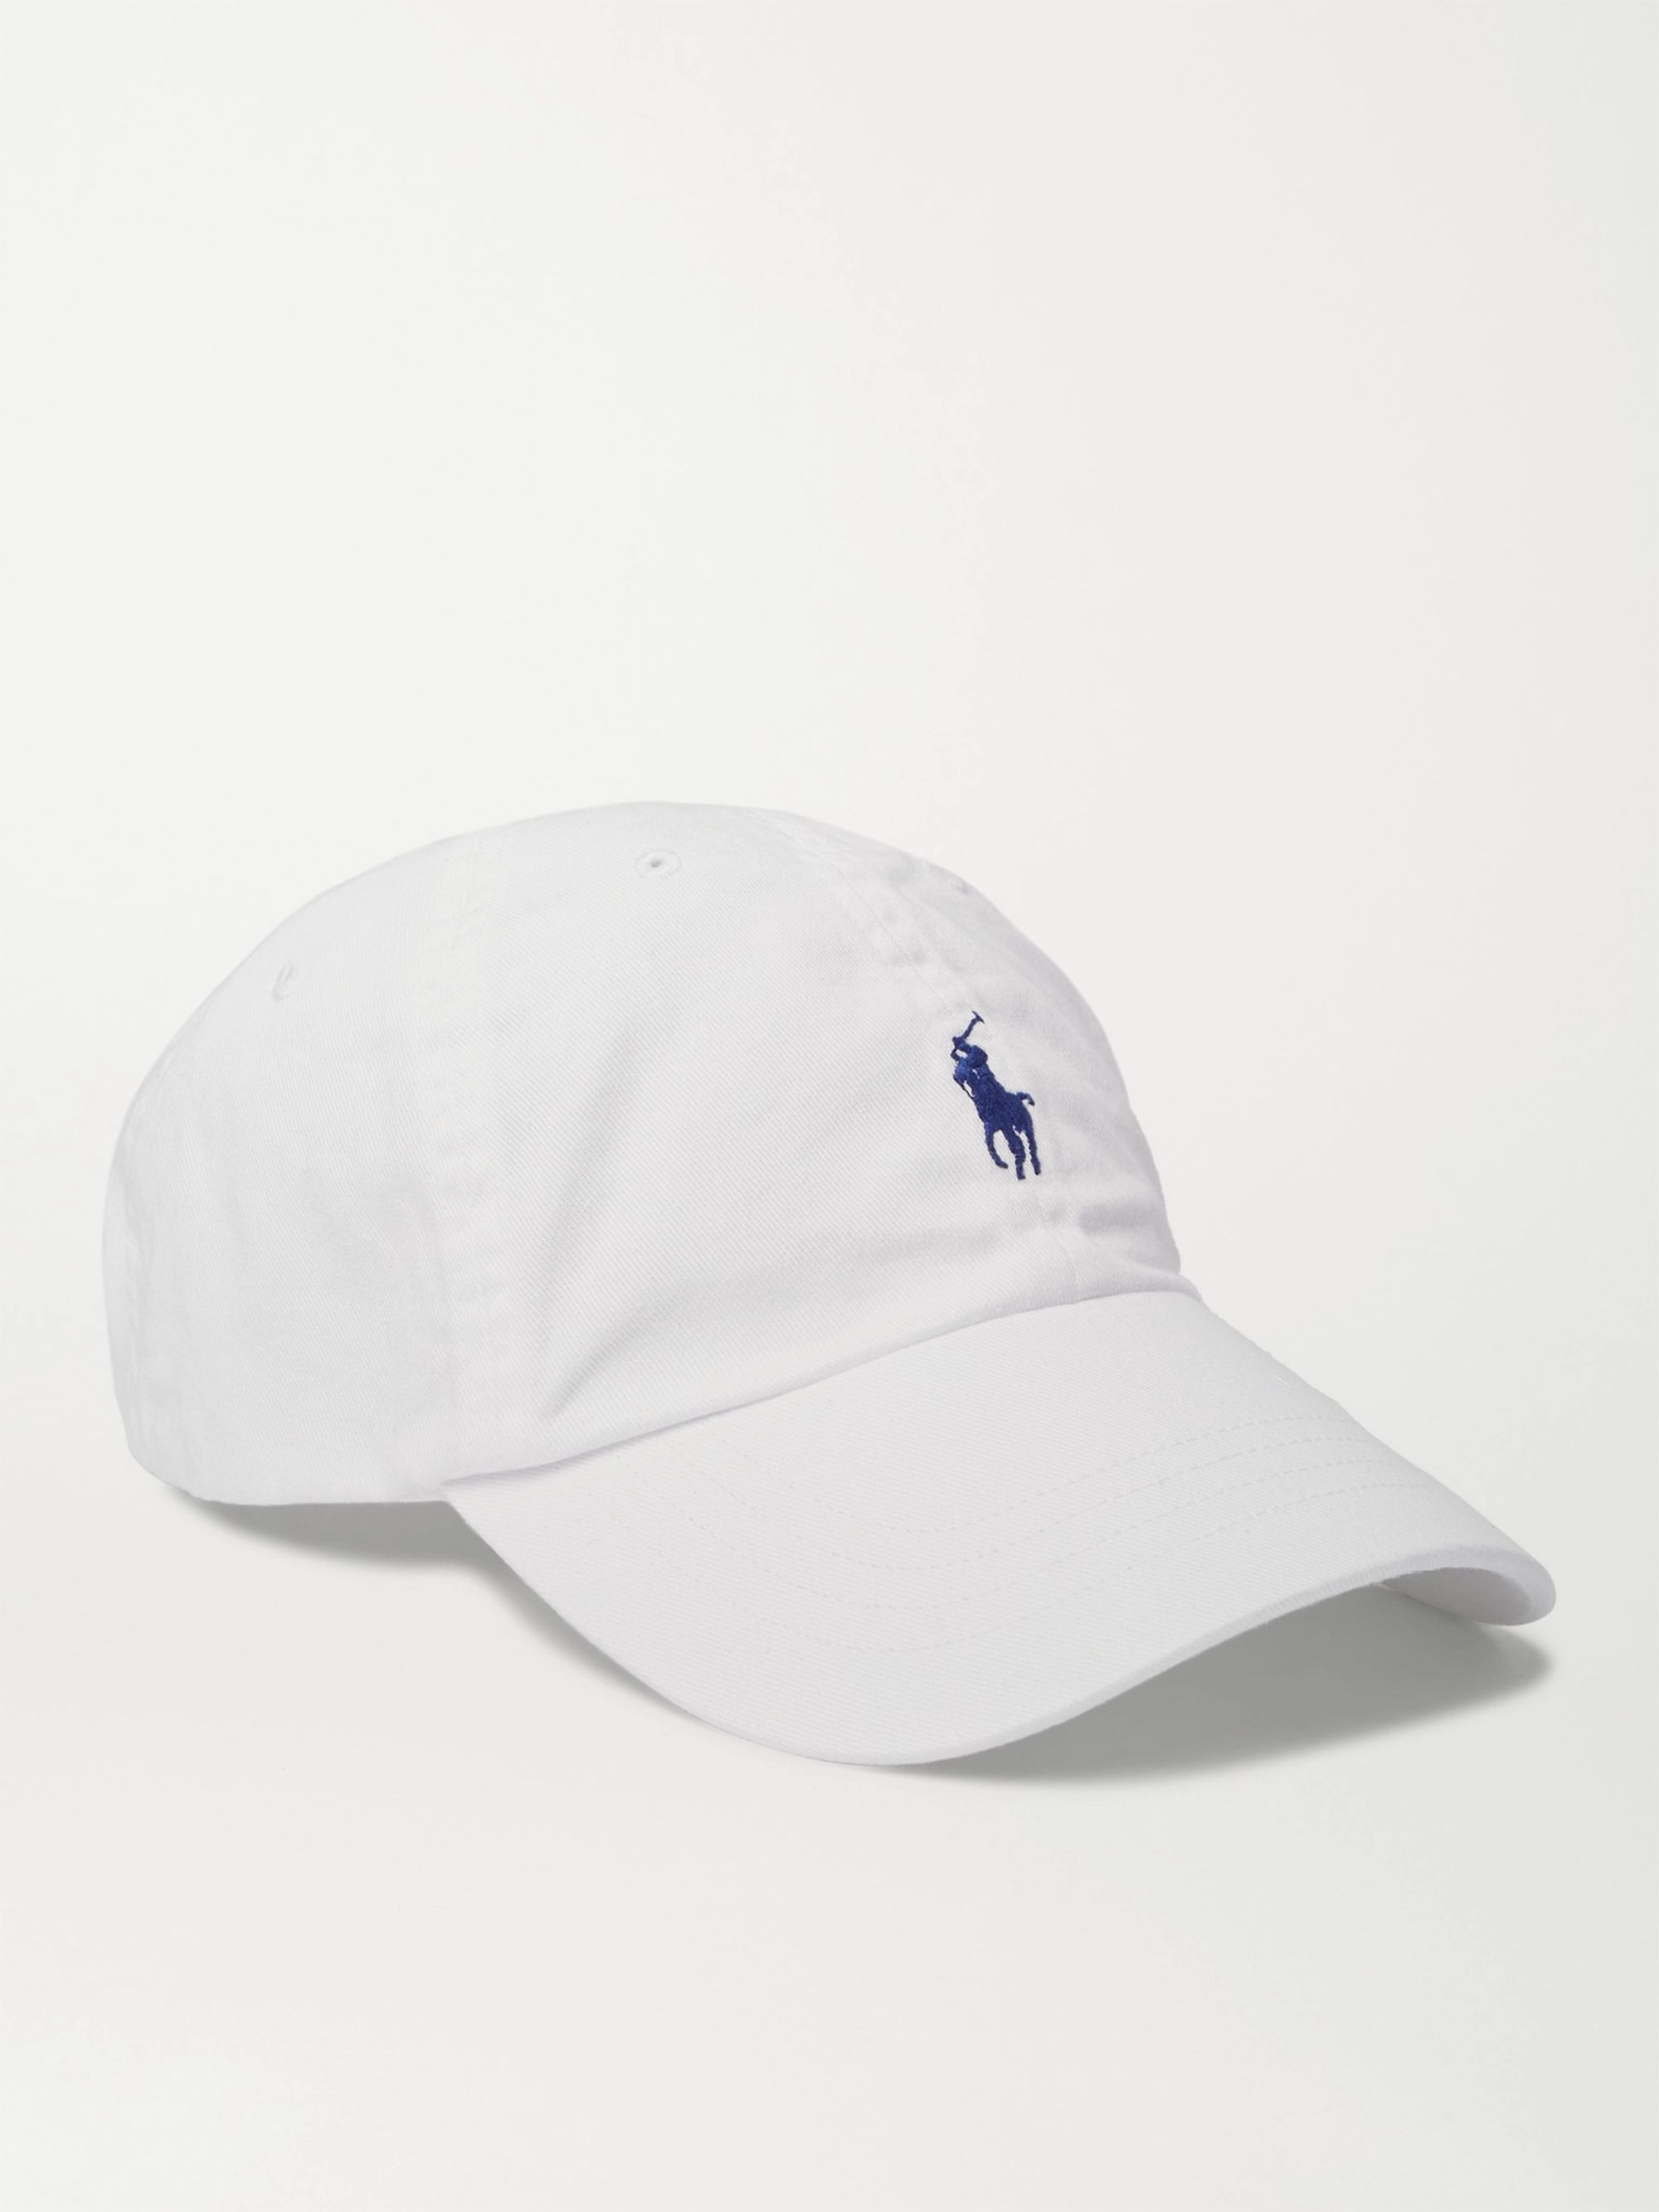 white polo hat